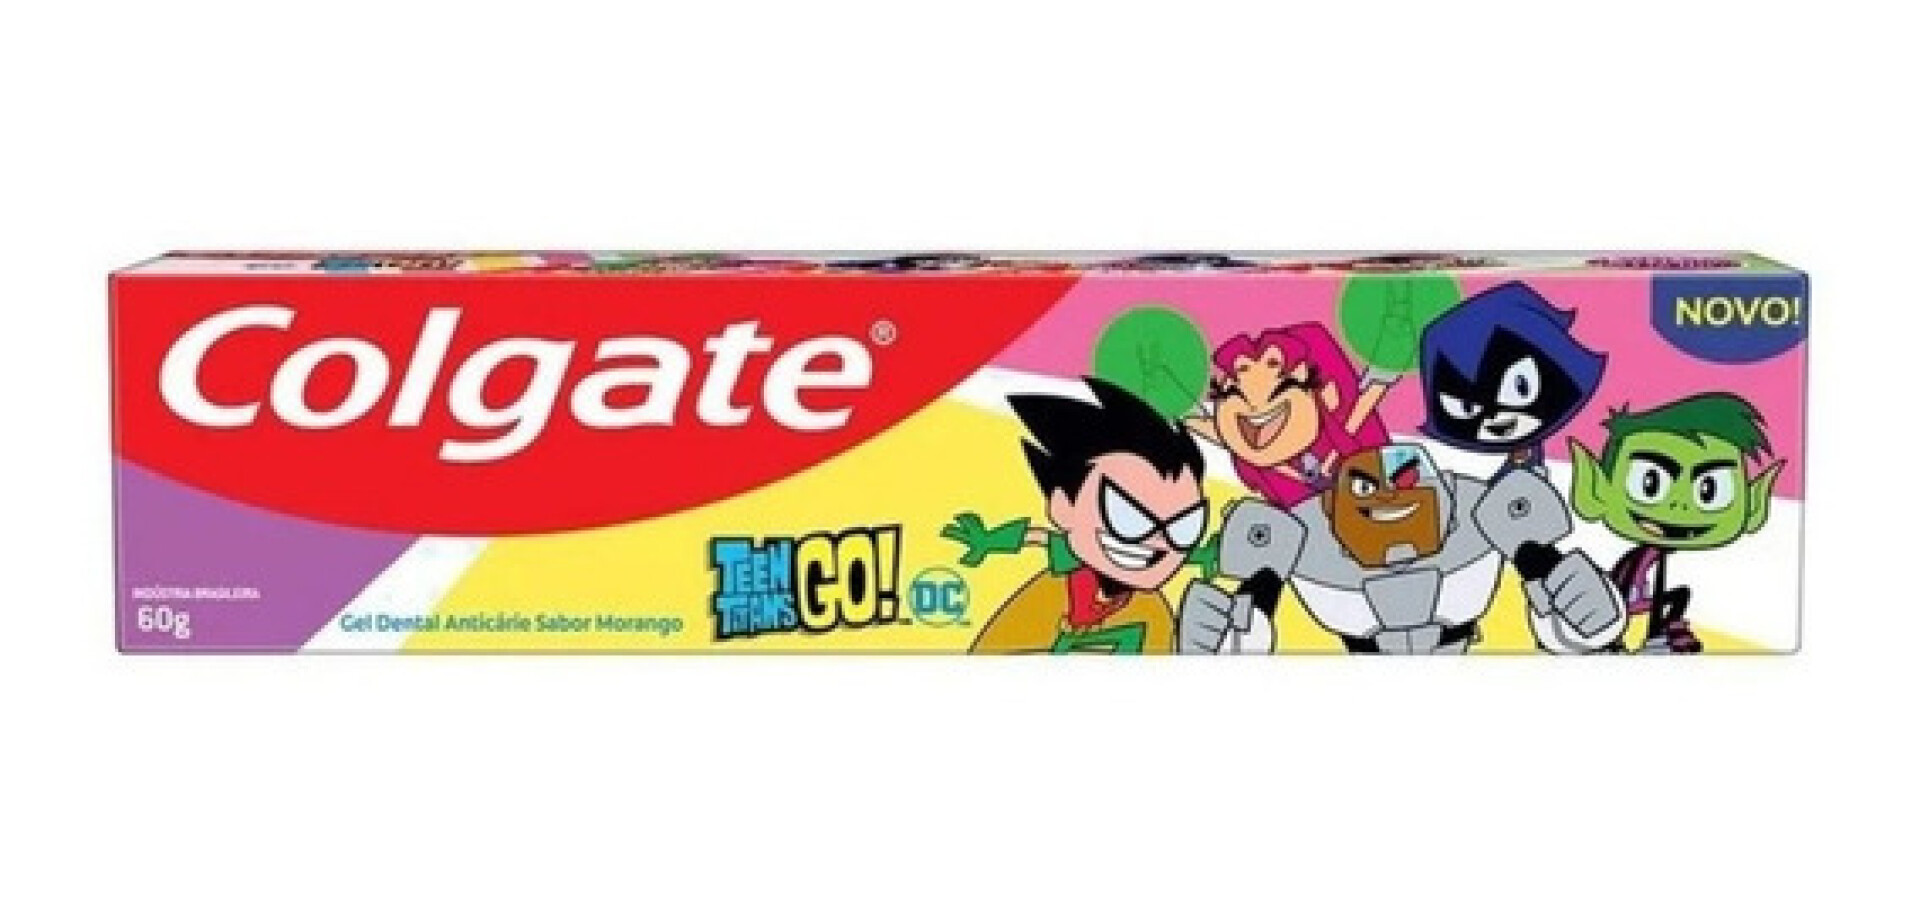 Colgate Pasta Teen Titans Go 